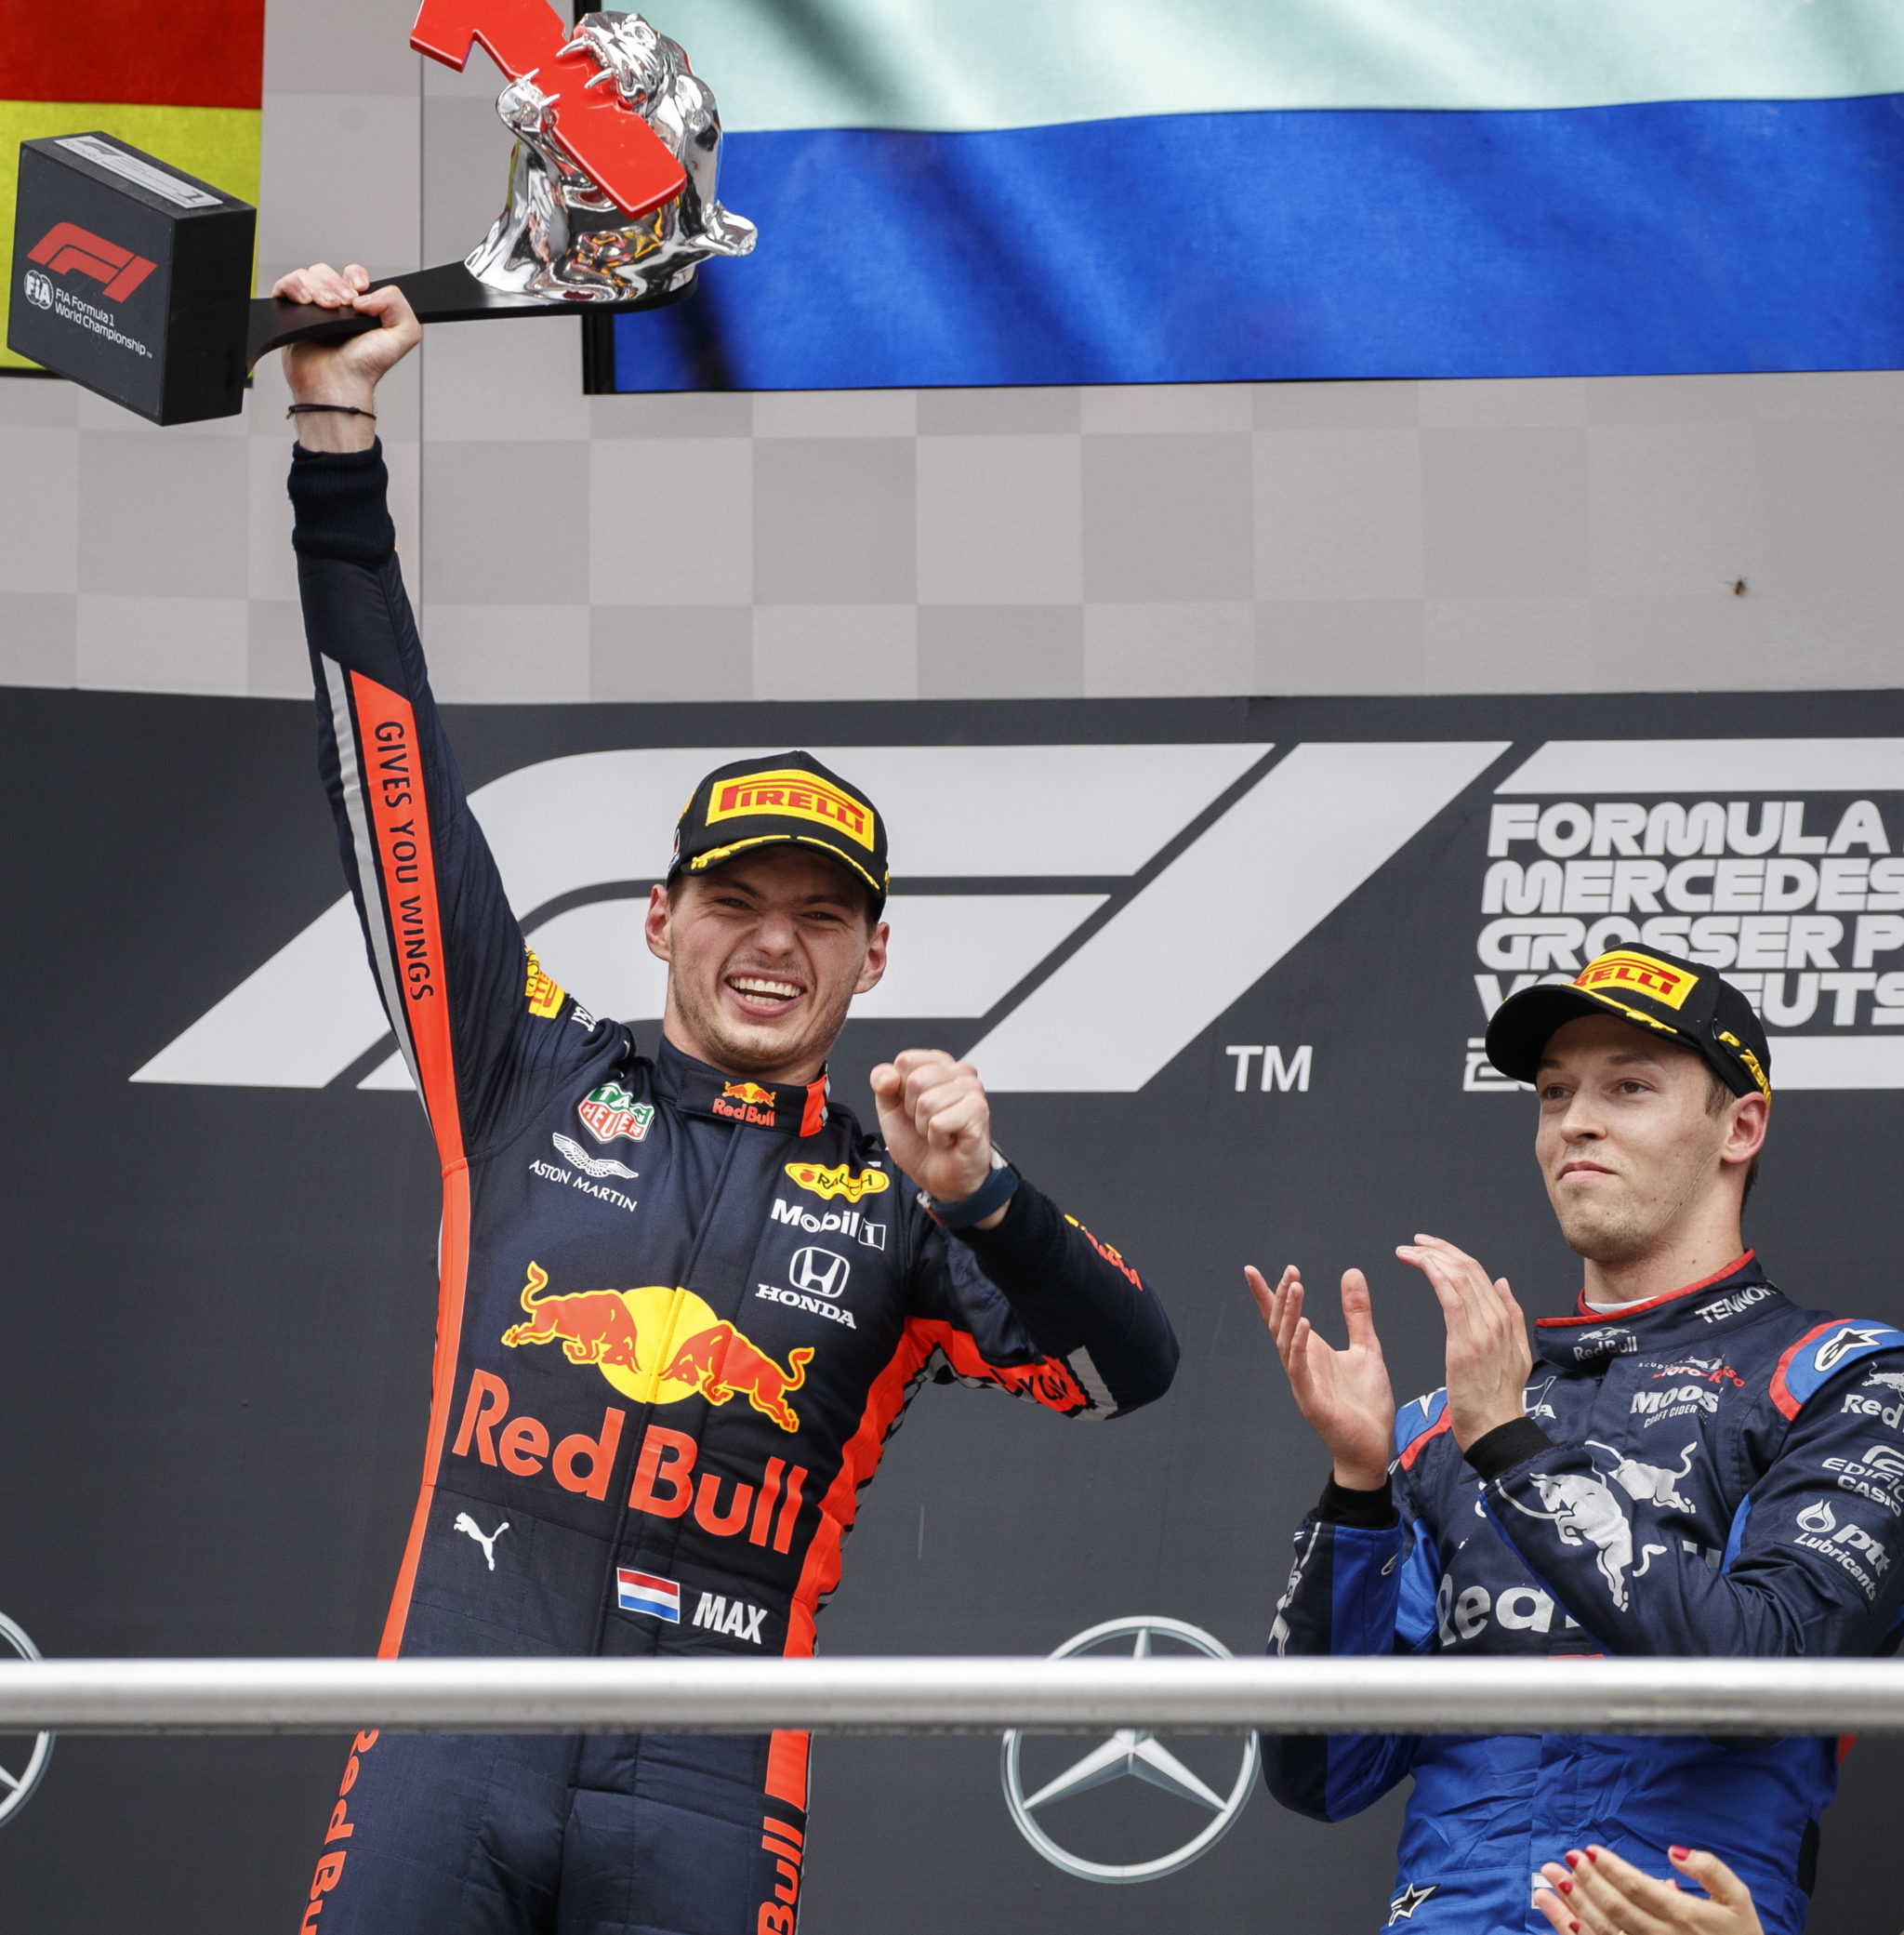 Niemcy: Zwycięzca holenderskiej Formuły 1 Max Verstappen zAston Martin Red Bull Racing i zdobywca 3. Miejsca Daniil Kvyat ze Scuderia Toro Rosso świętują na podium po GrandPrix Formuły  na torze w  Hockenheim. fot. Valdrin XHEMAJ, PAP/EPA.